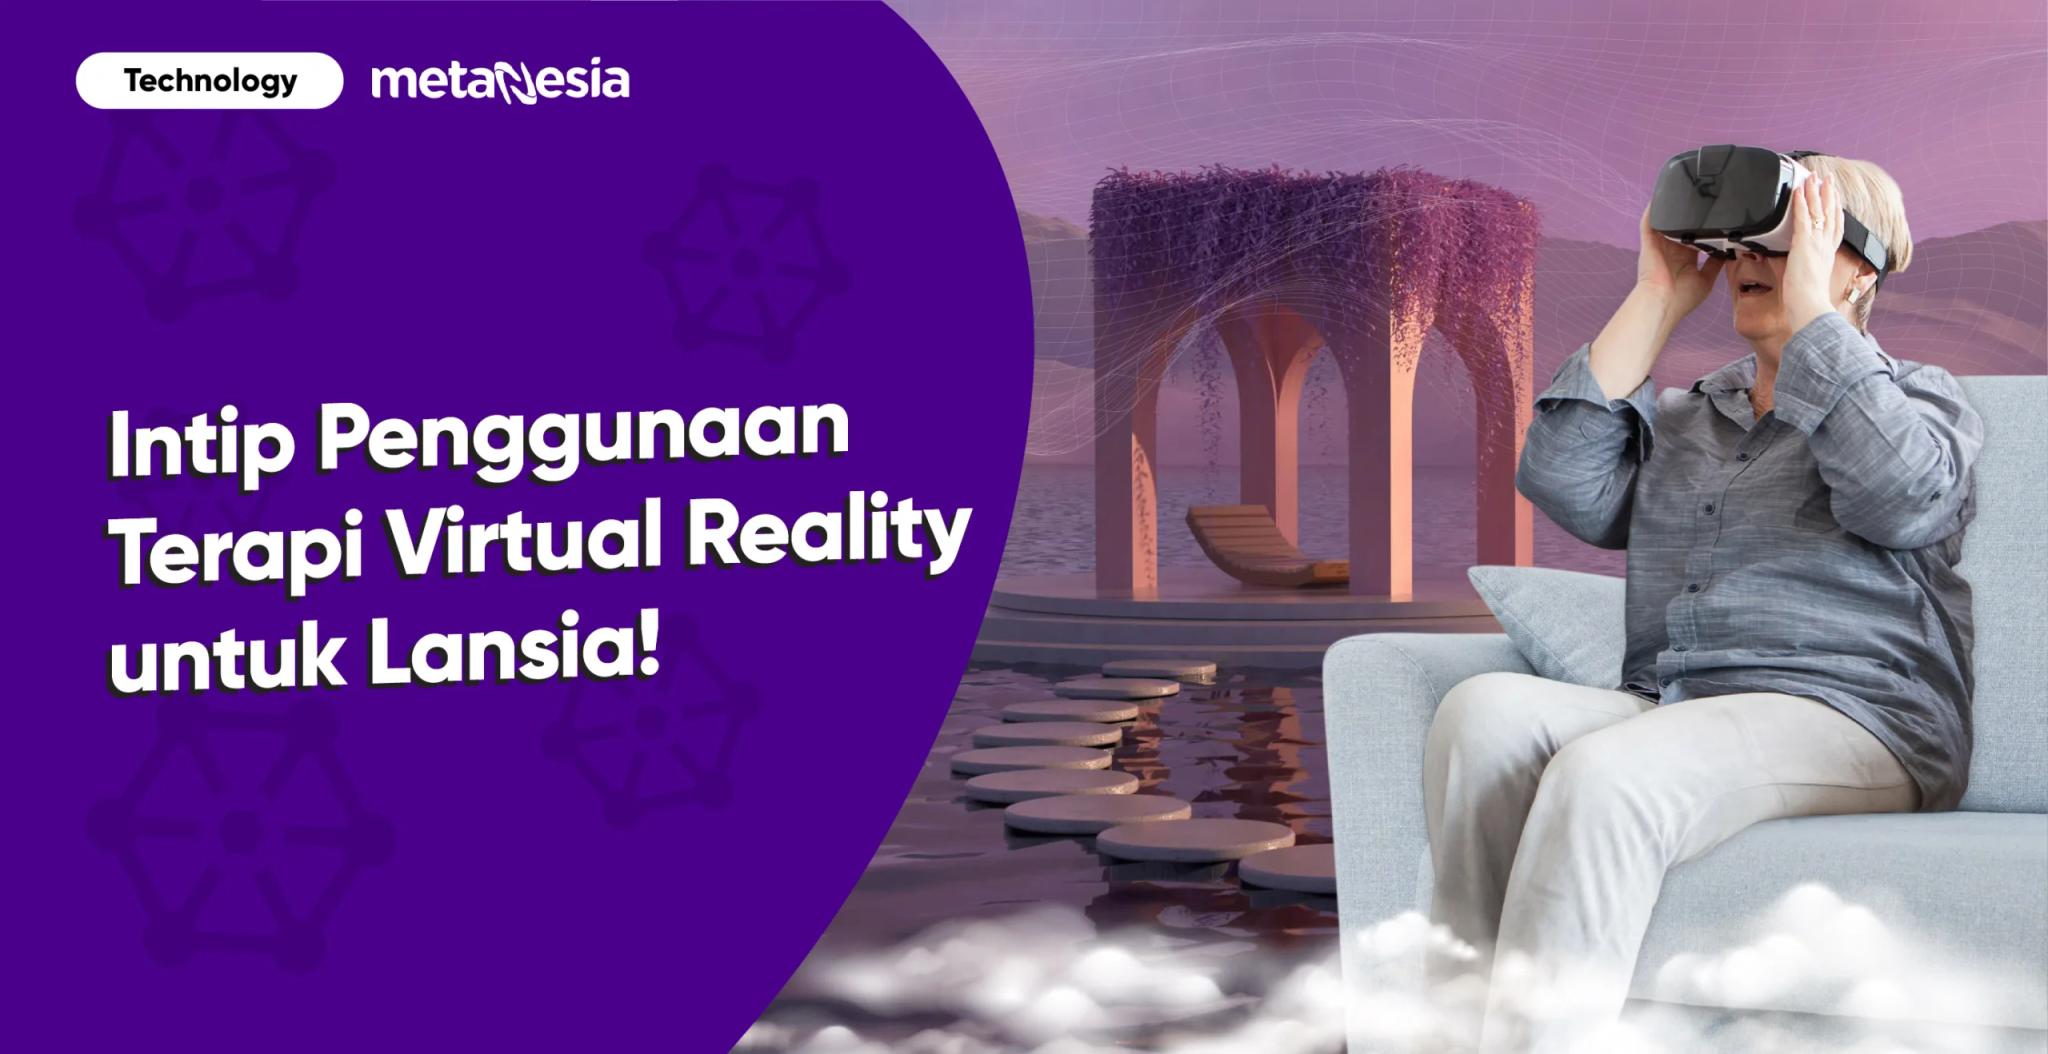 Intip Penggunaan Terapi Virtual Reality yang Cocok untuk Lansia!